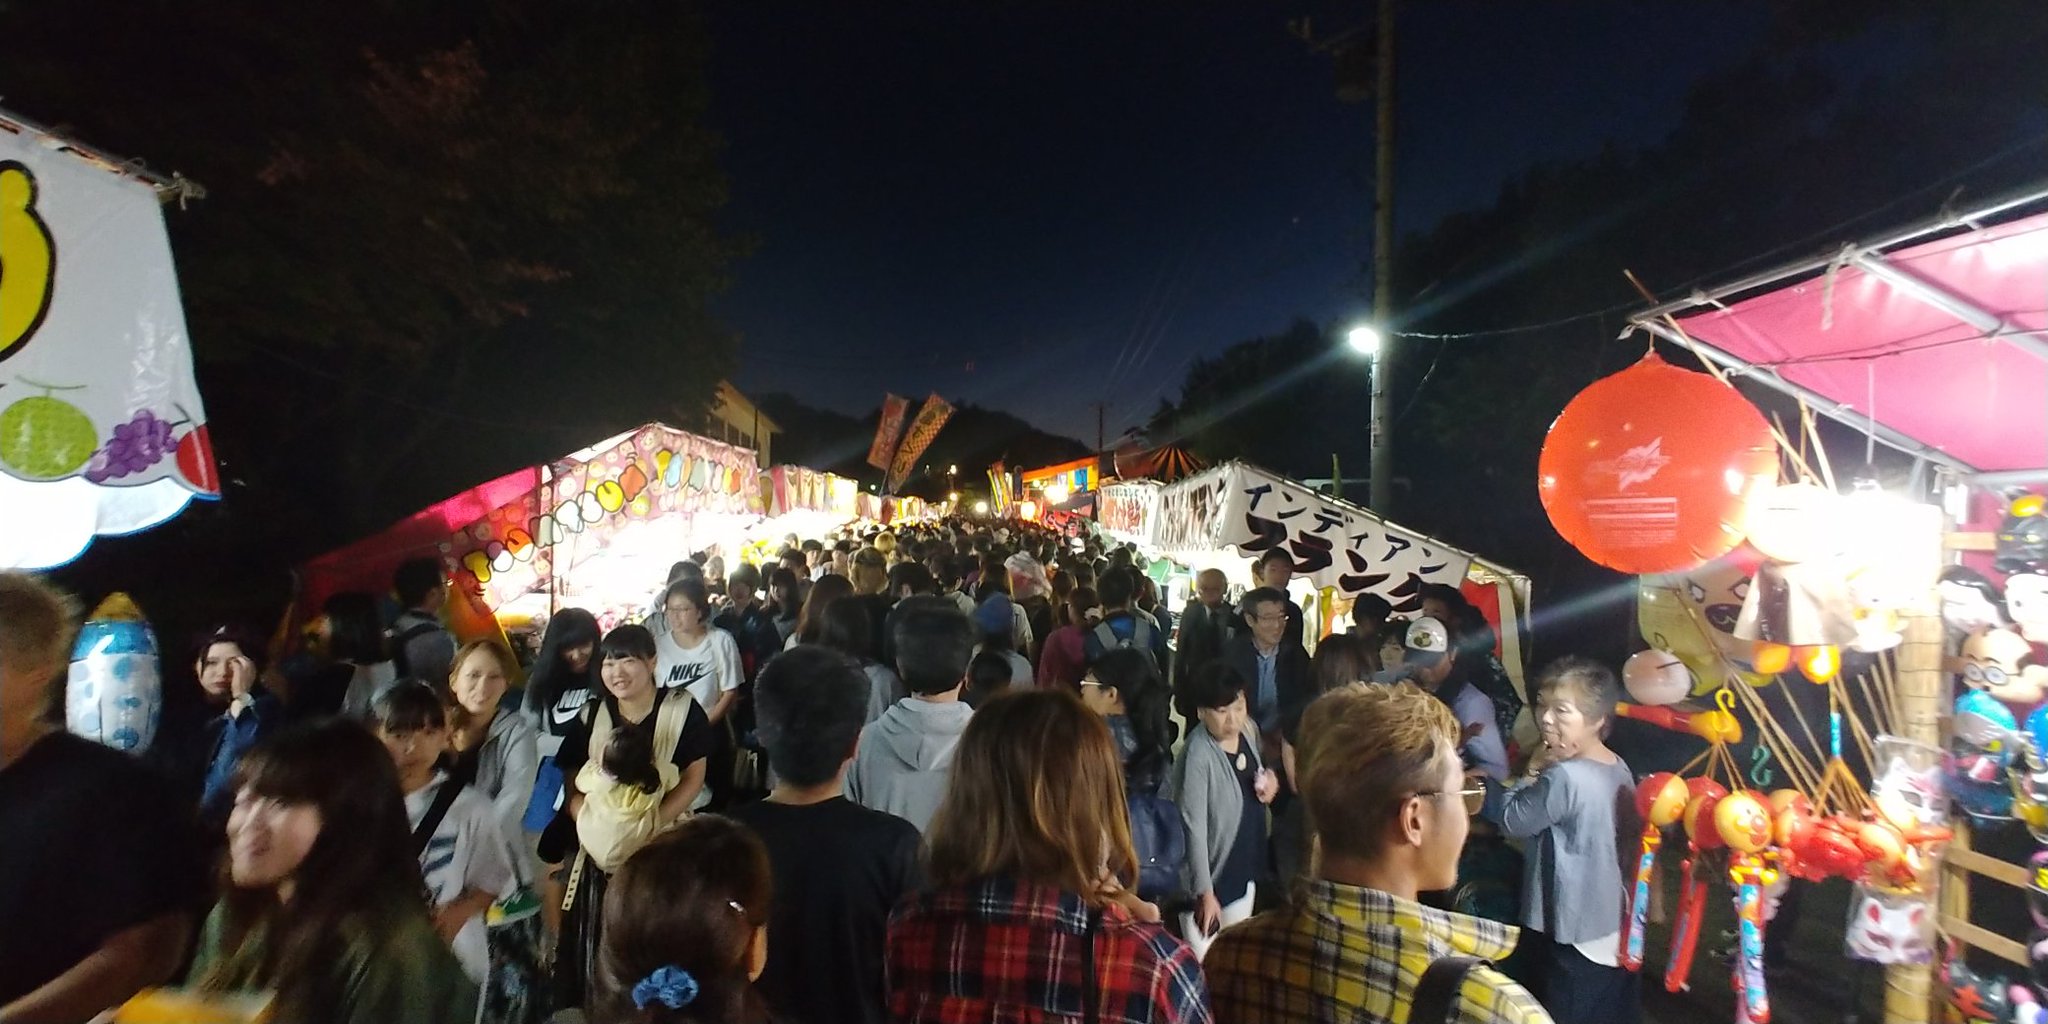 Takayuki Okada 昨日から開催されている千歳神社祭り 大勢の皆様で賑わっておりました 進化した仮設トイレwalet Tcも大行列 明日が最終日となります 是非平成最後の夏祭り楽しんでください 平成さいごの夏 千歳神社